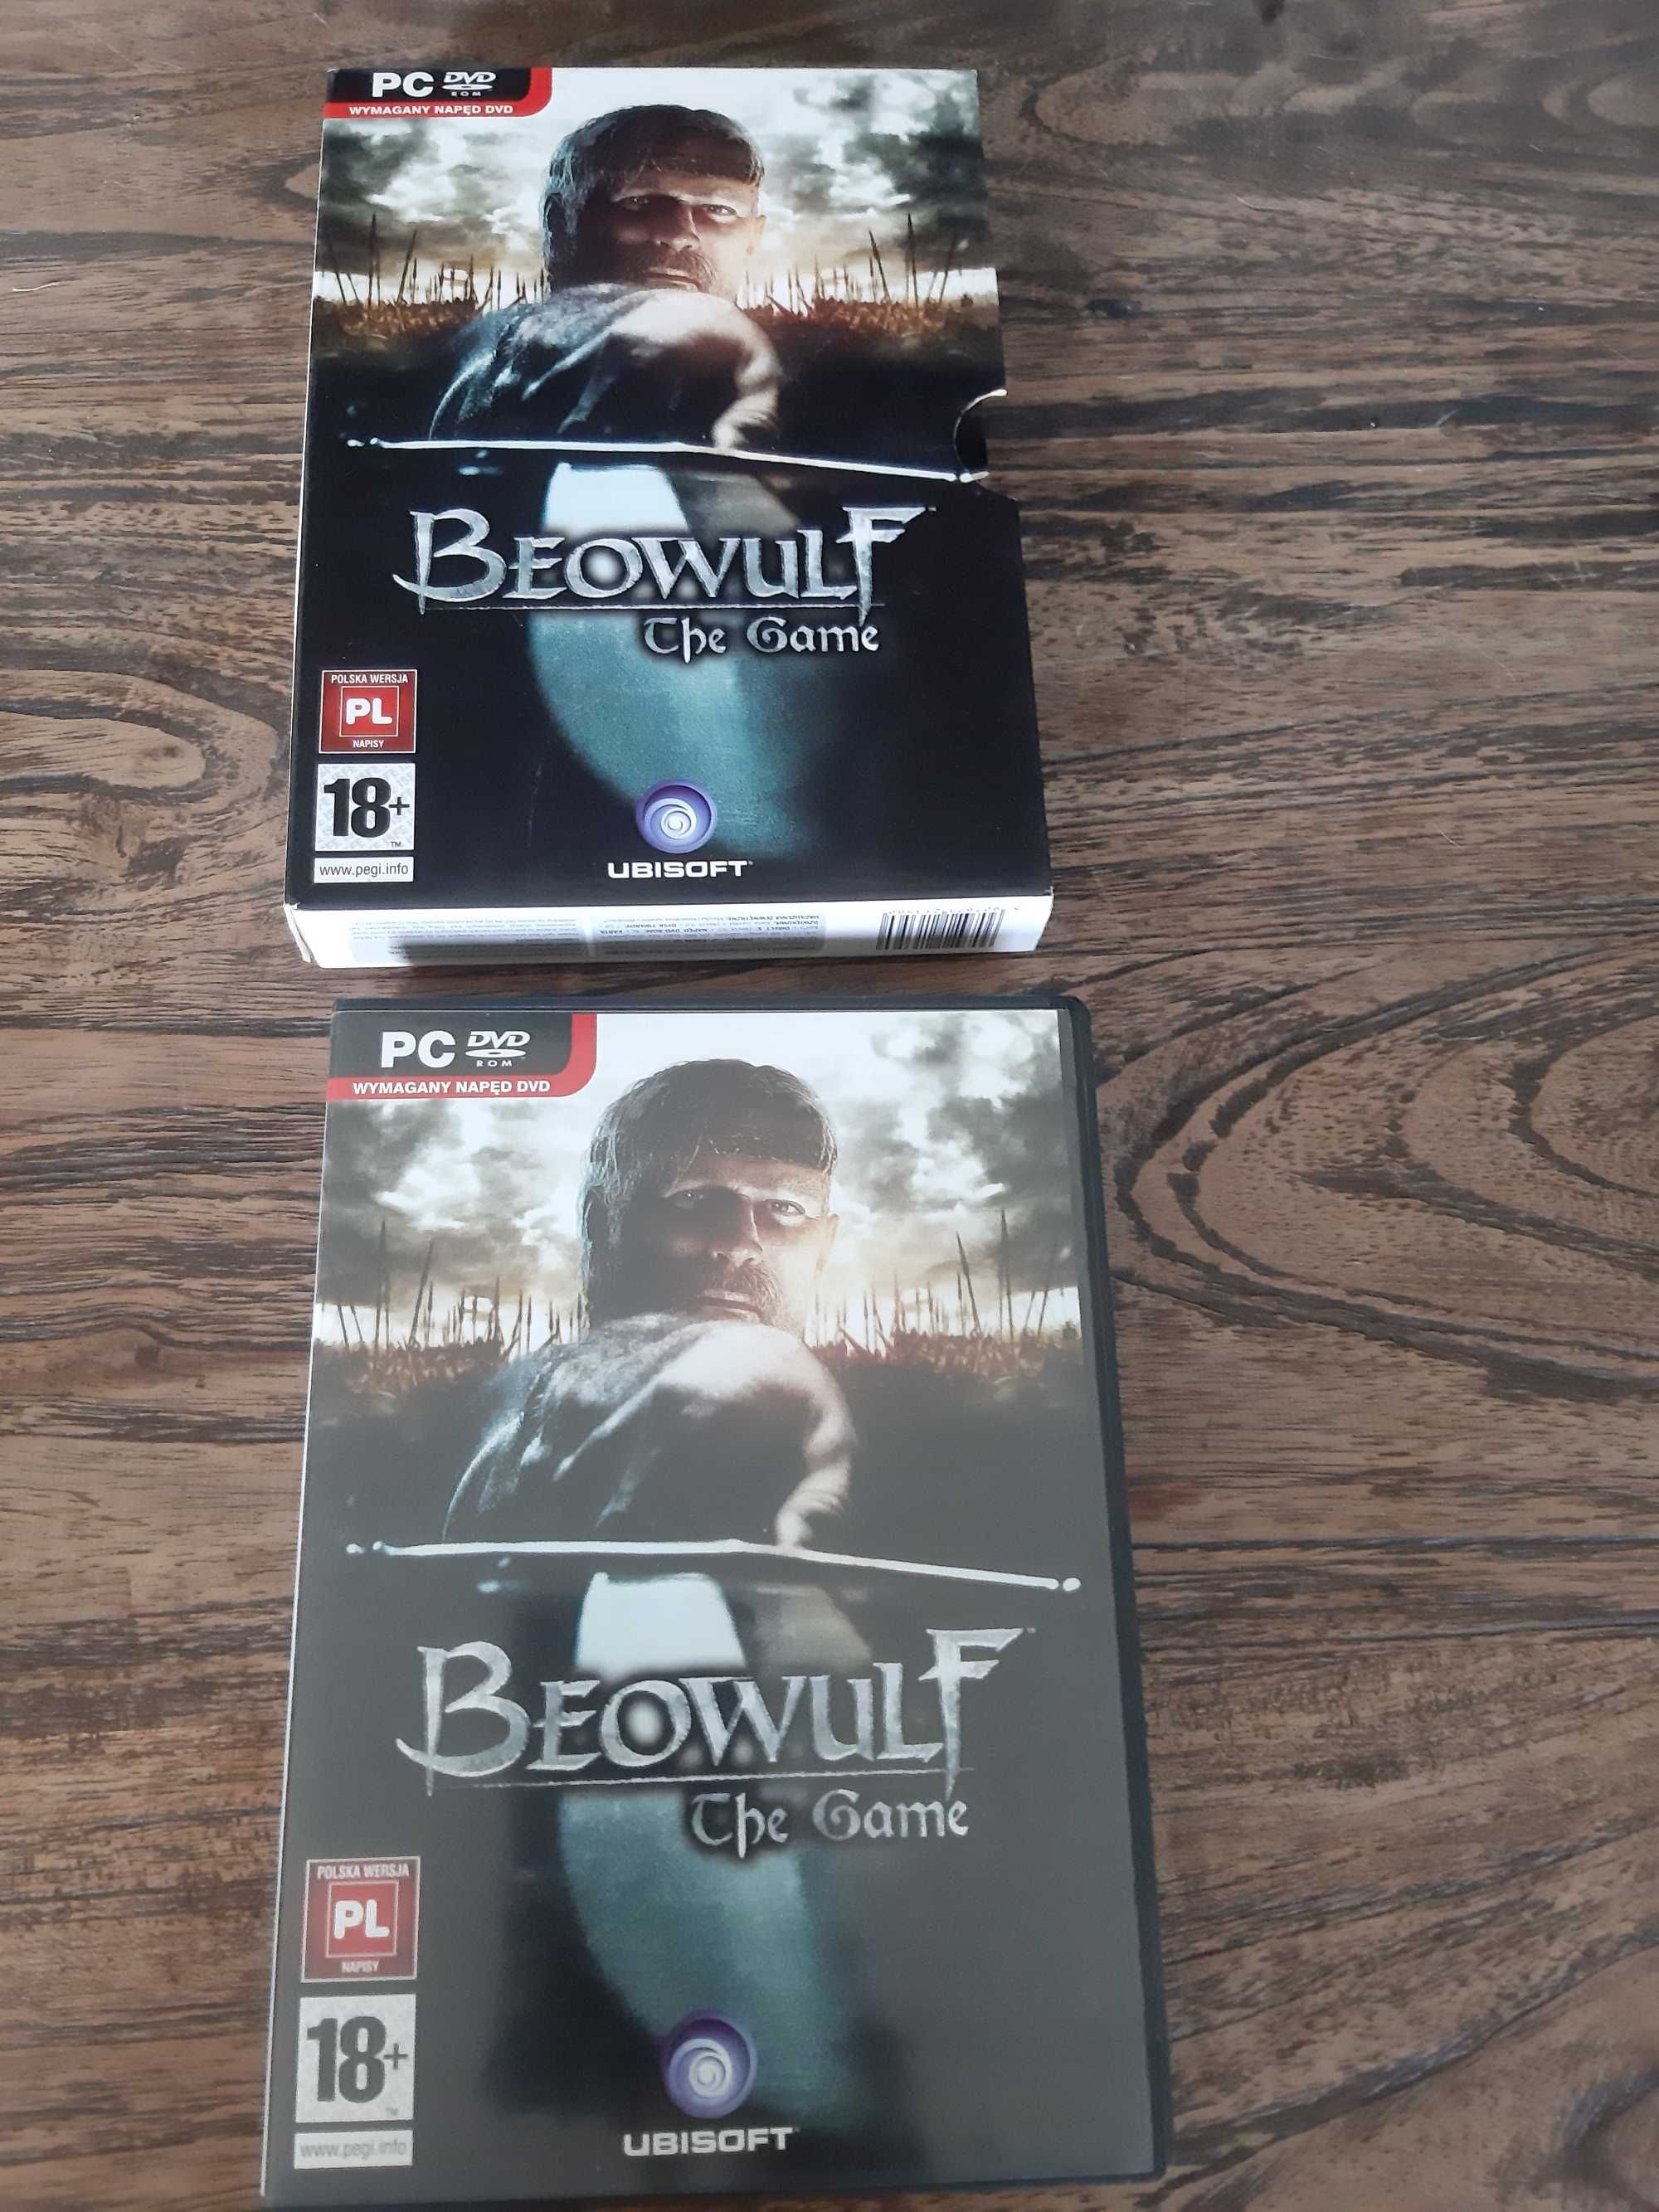 Beowulf - gra PC, stan bdb! Płyta, podręcznik, pudełko - komplet!